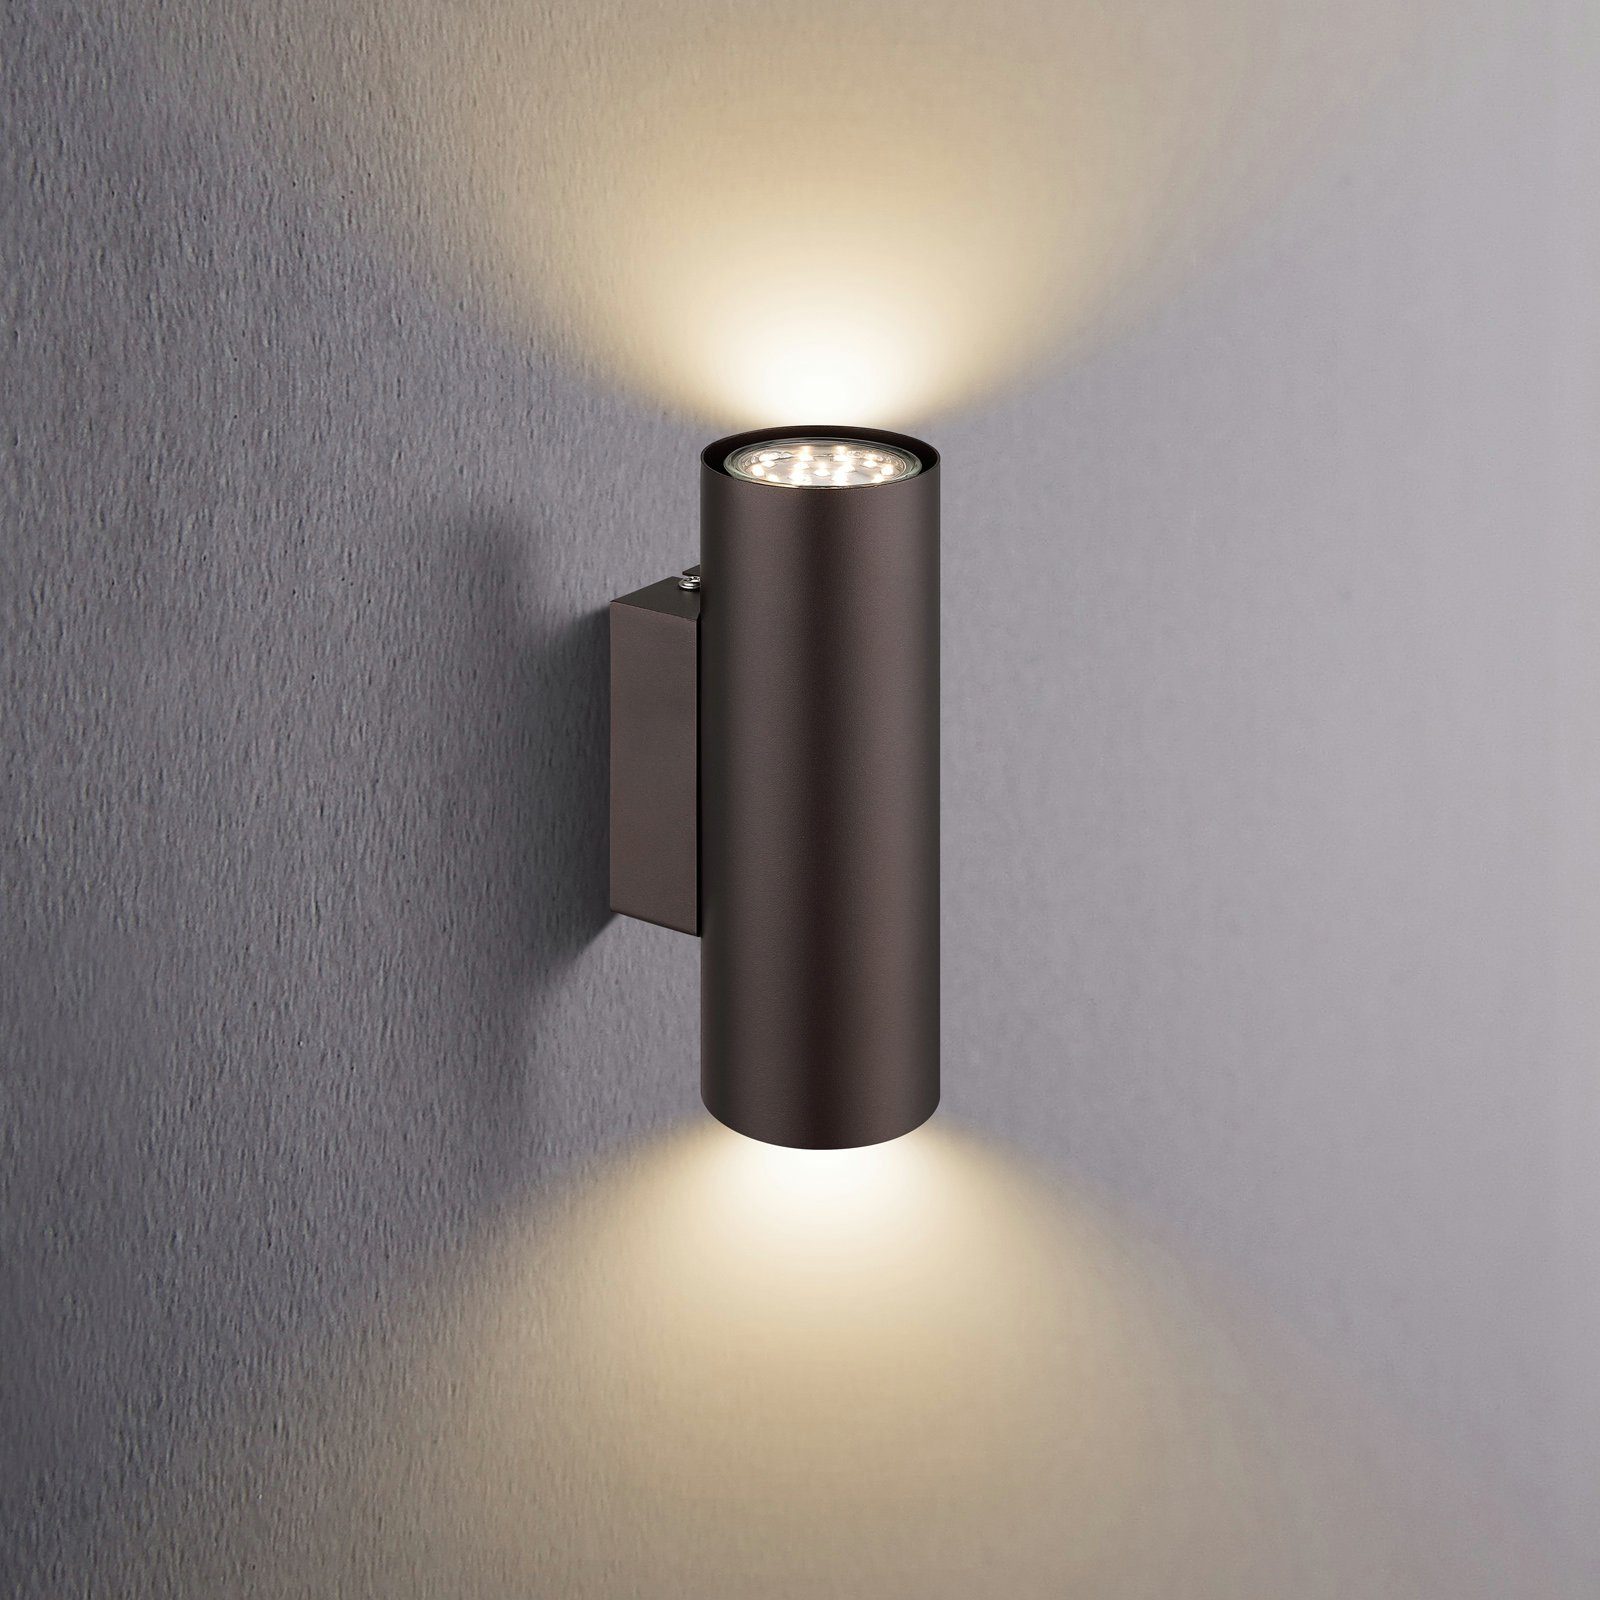 Wand Lampe ALU Strahler grau Leuchte Design Spot Flur Küchen Beleuchtung UP DOWN 